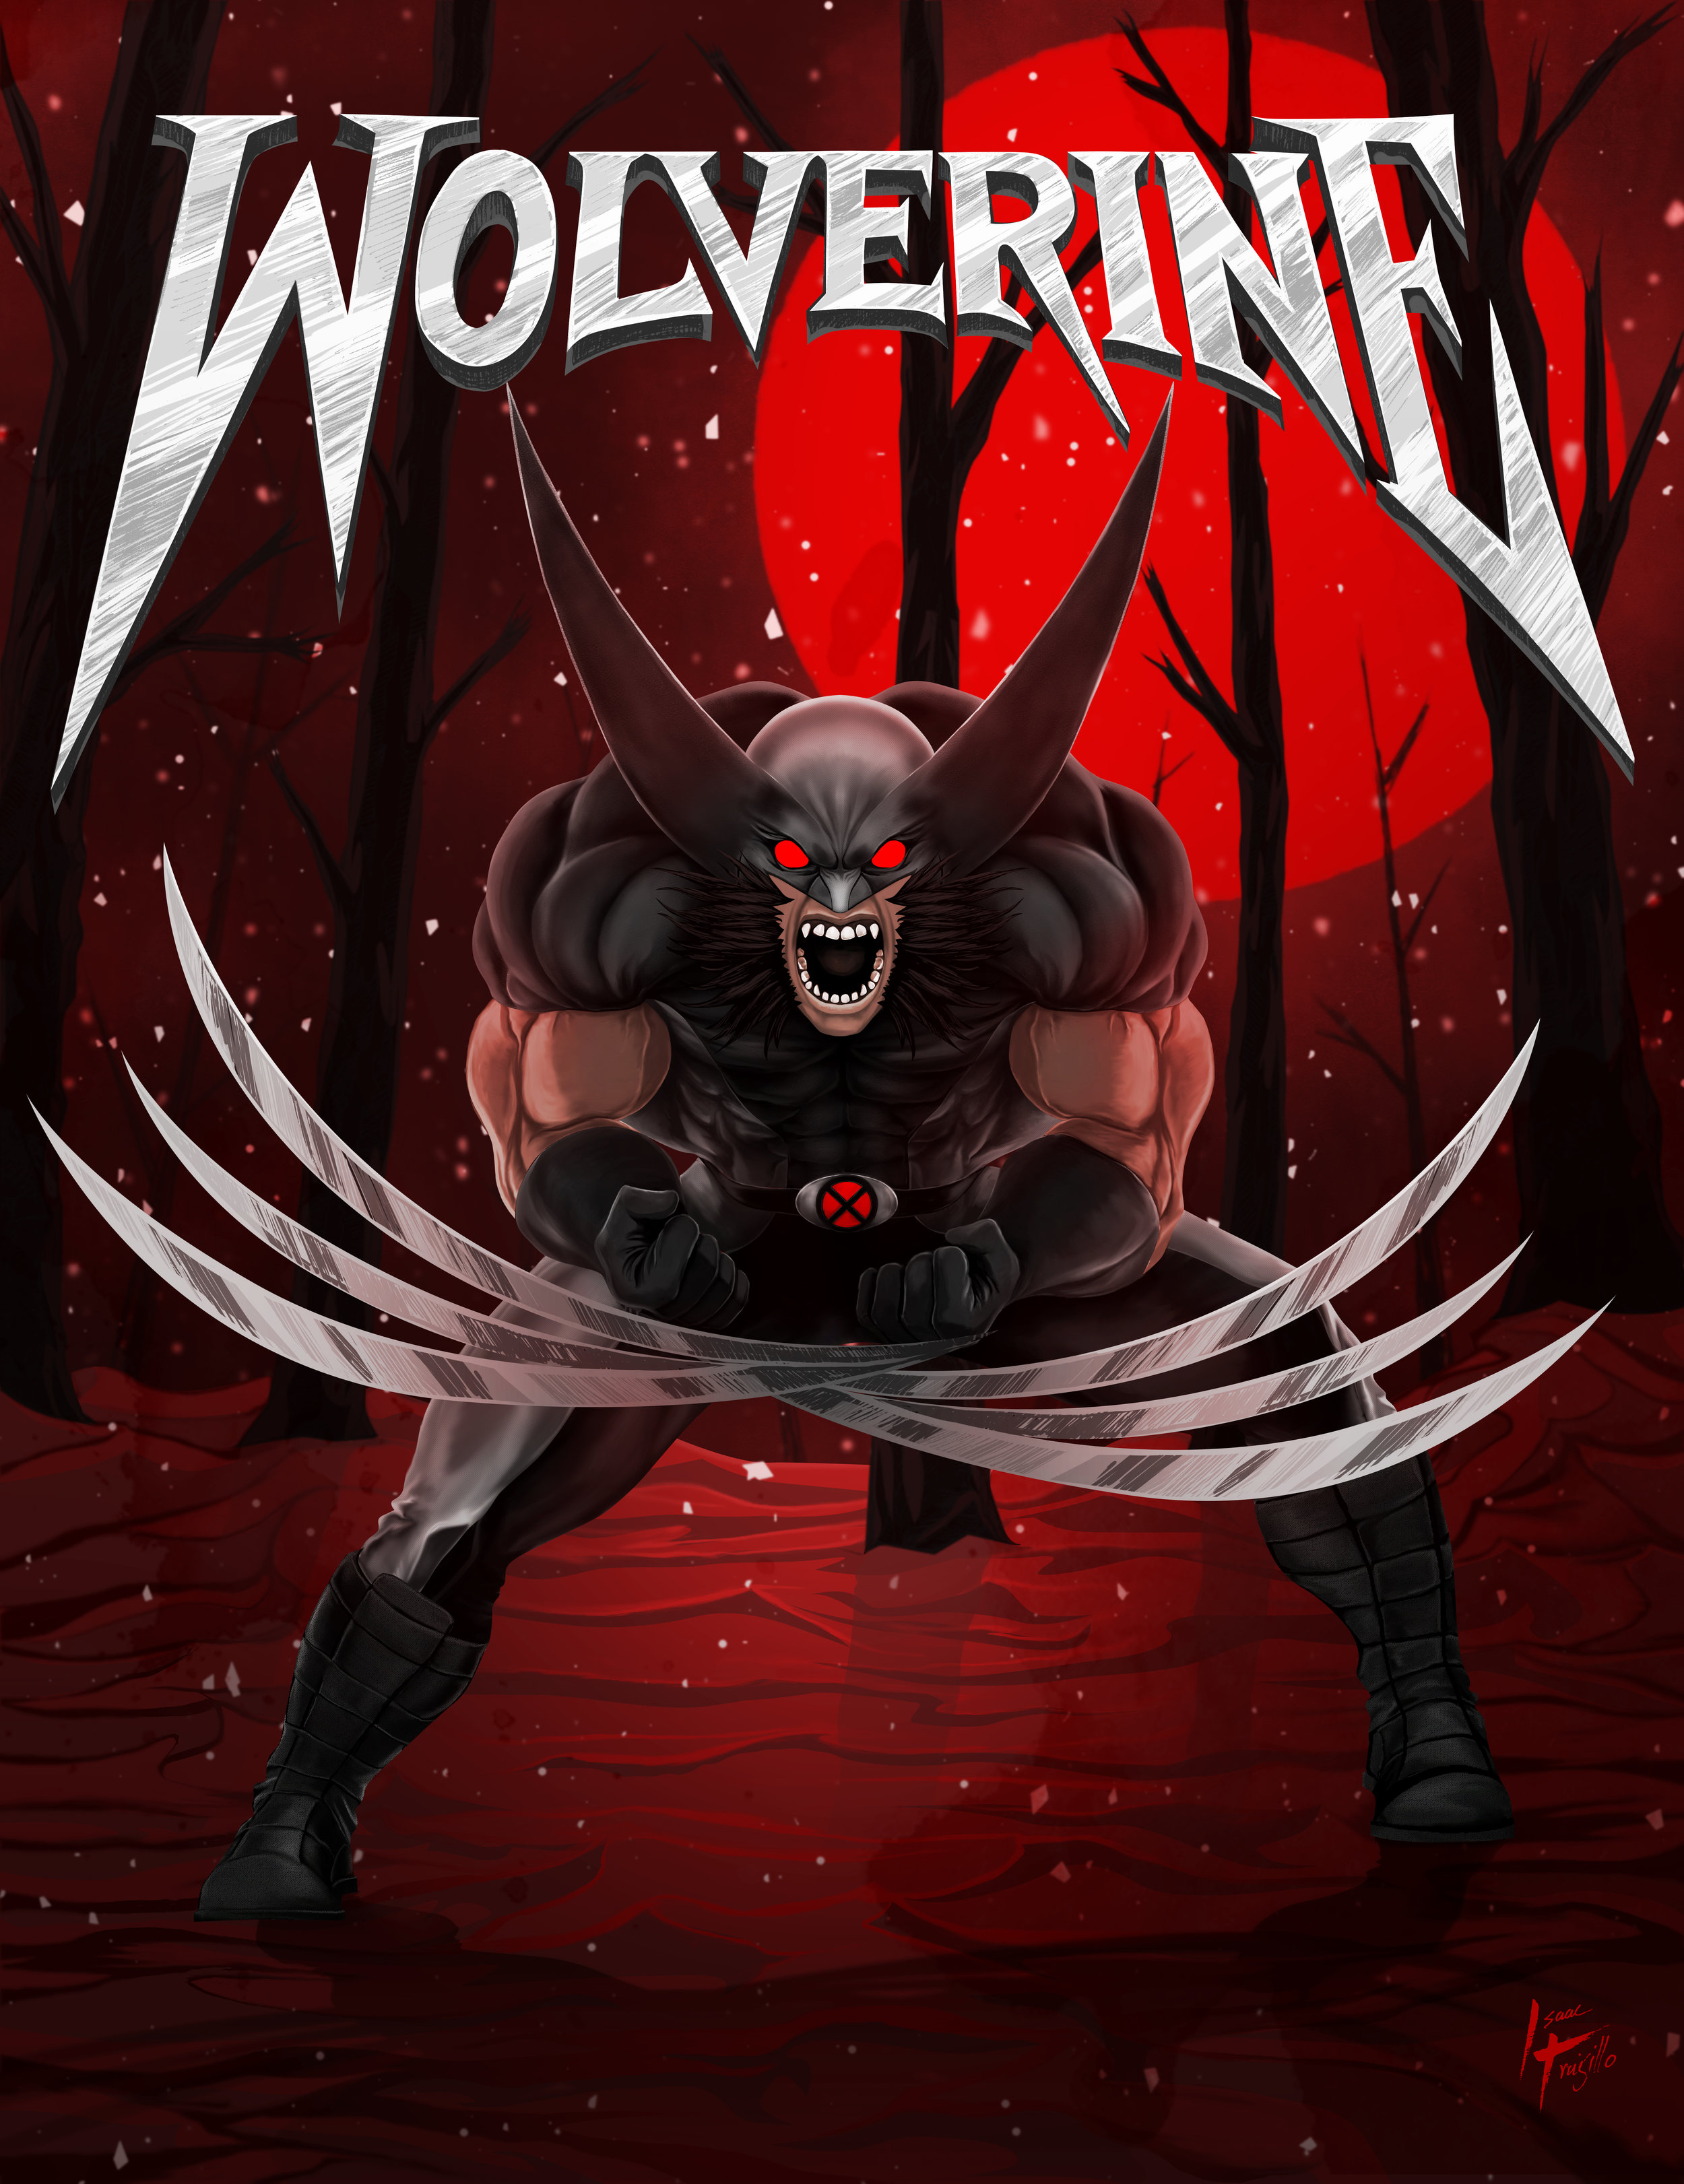 The Berserker "Wolverine"